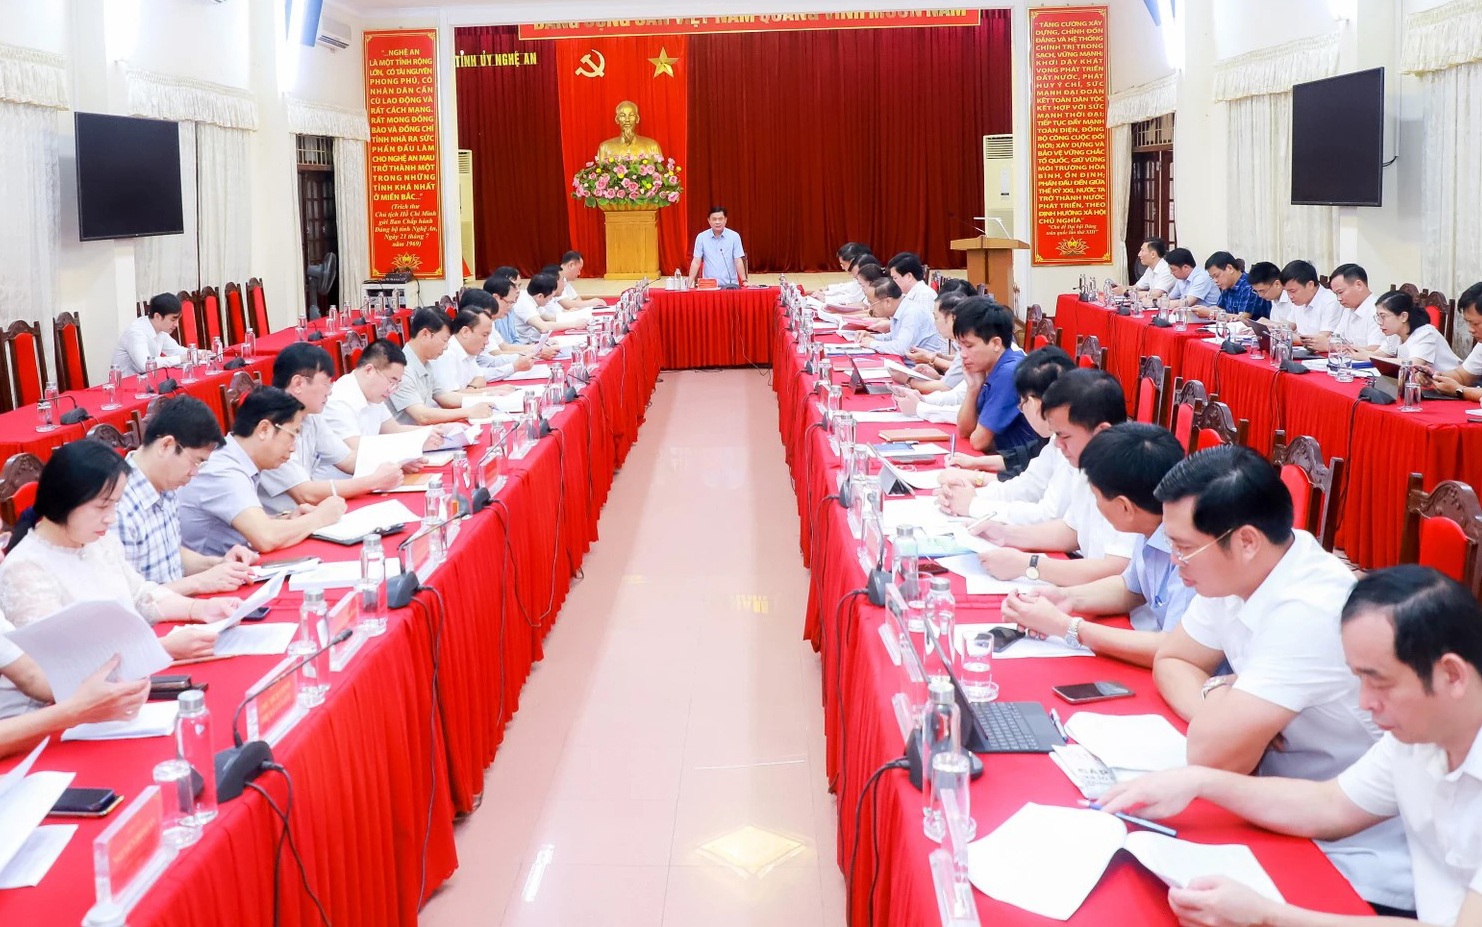 Ban chỉ đạo sáp nhập đơn vị hành chính tỉnh Nghệ An làm việc với lãnh đạo các địa phương, ngày 15/4 (Ảnh: Bình An).